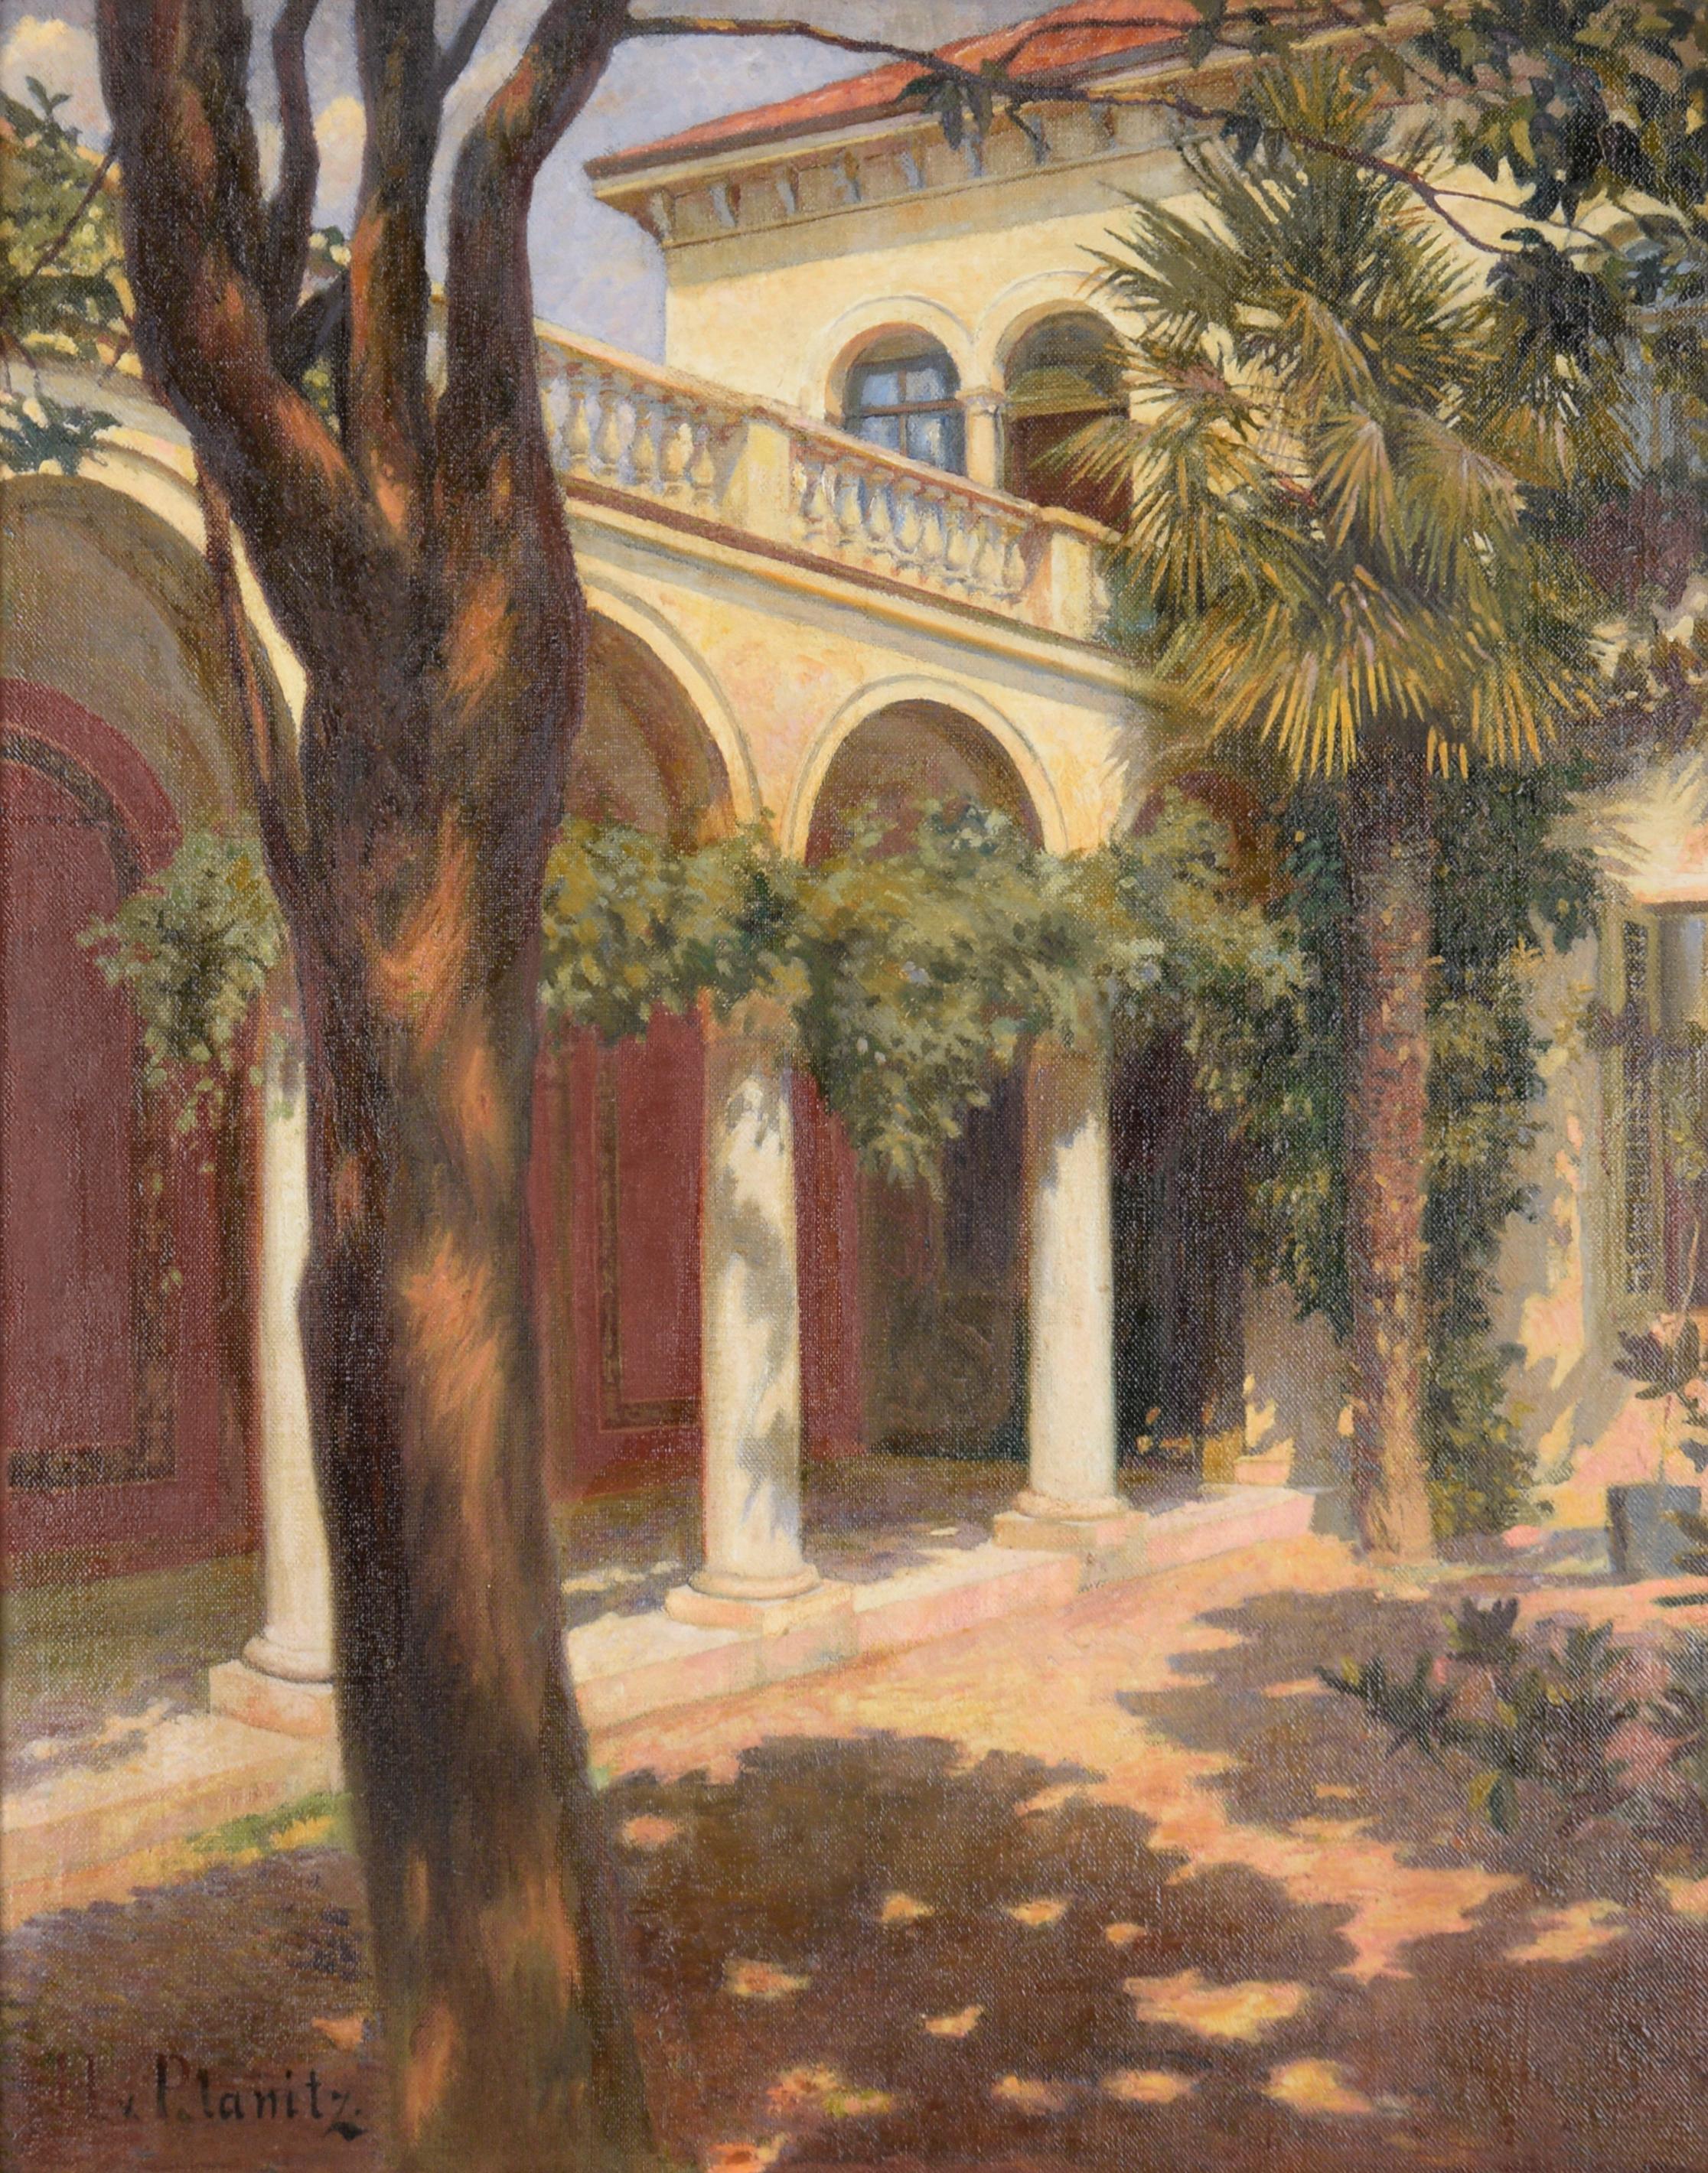 Courtyard Interior - Painting by H. von der Planitz